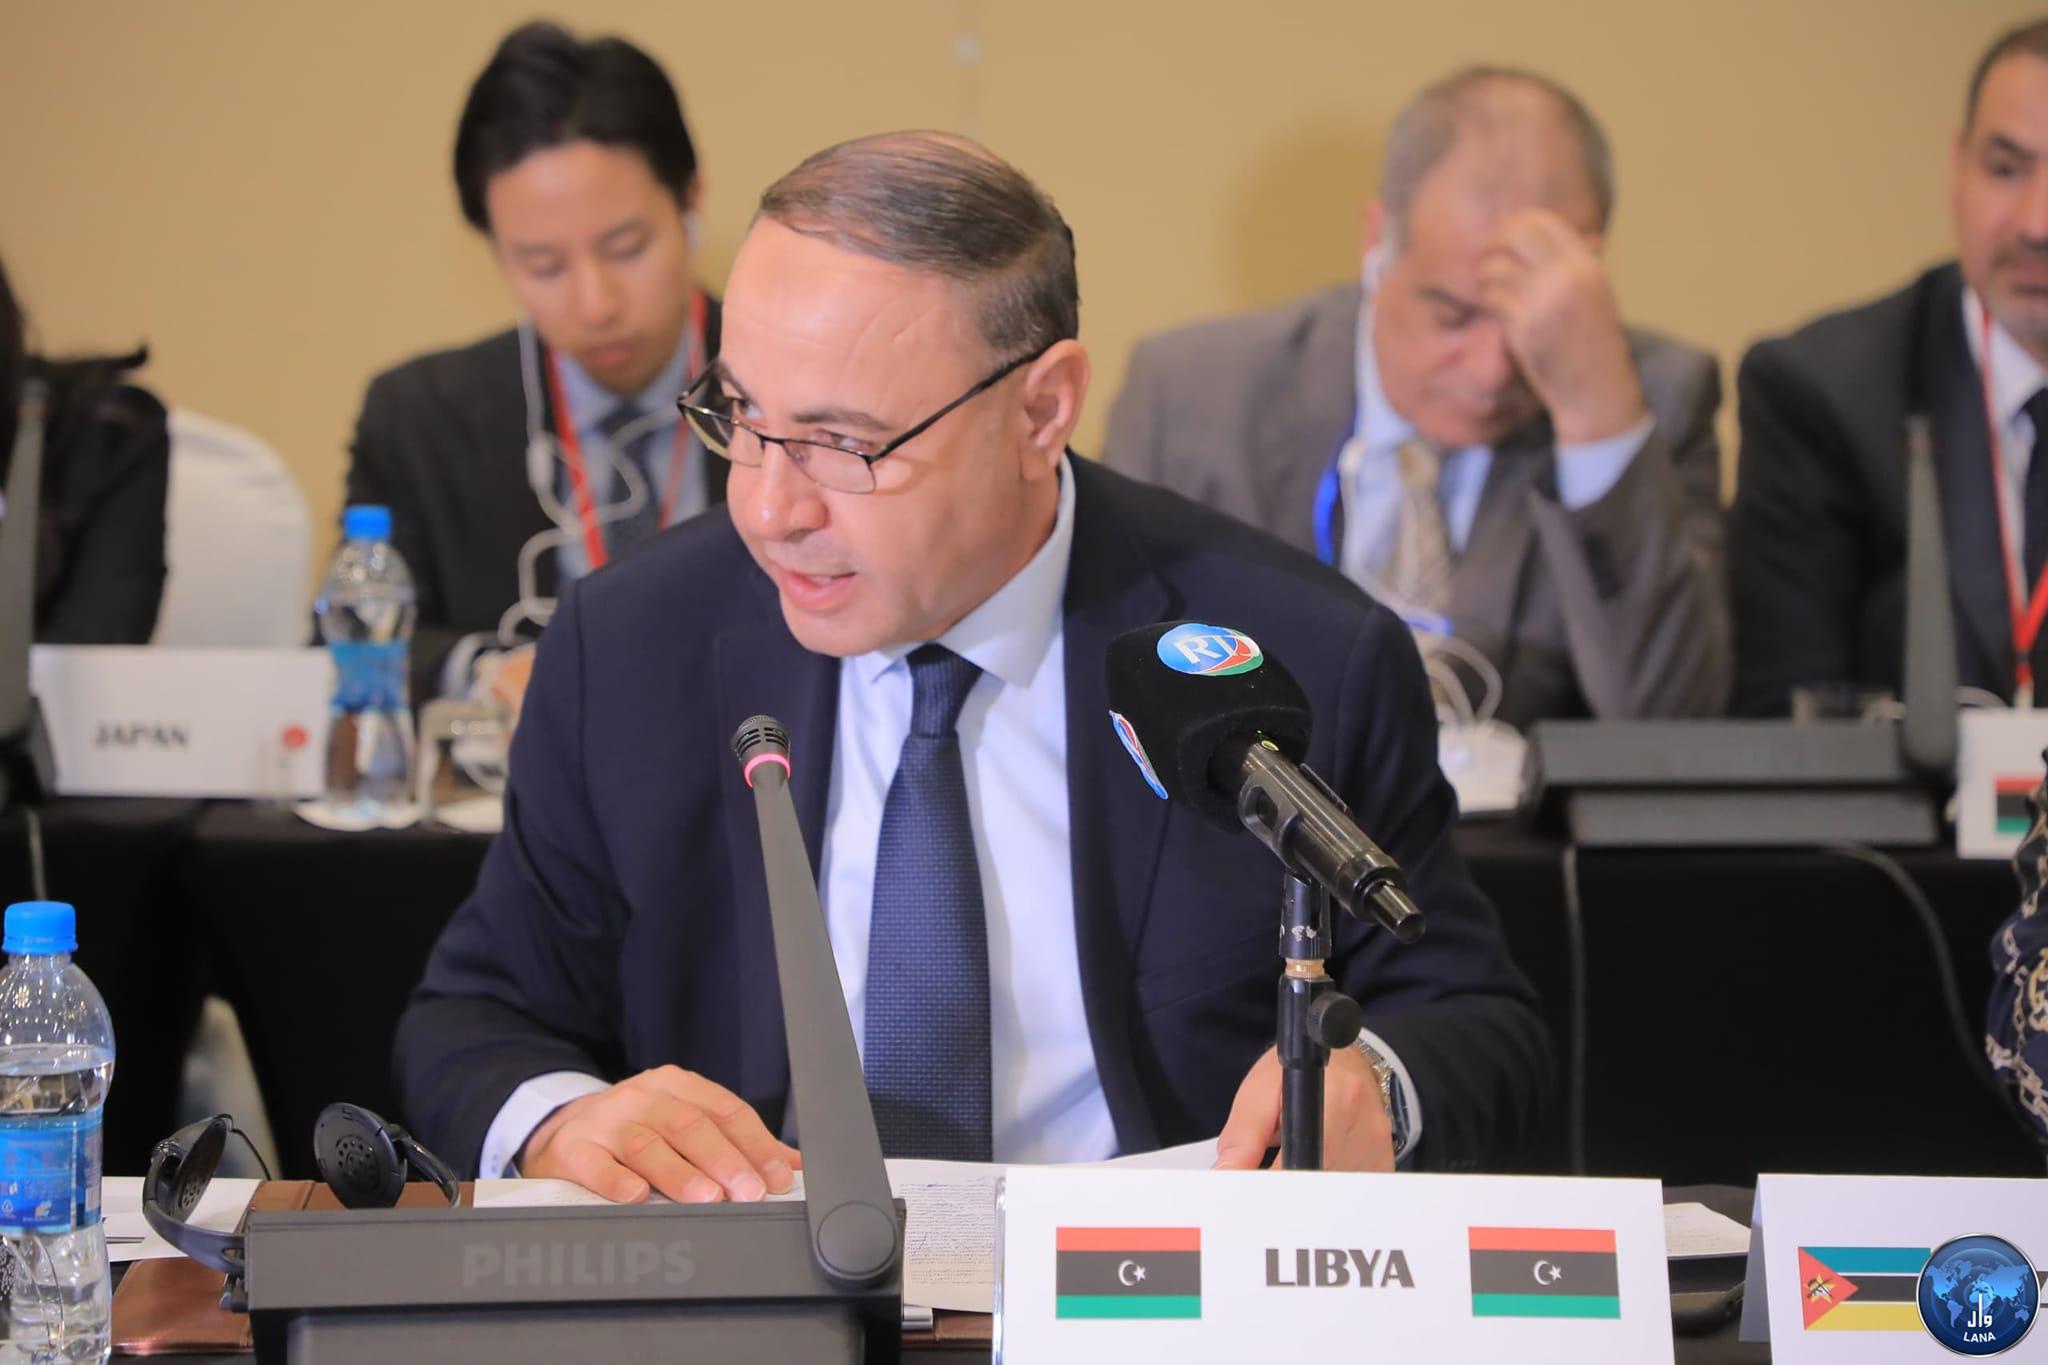  الباعور يؤكد وقوف ليبيا بجانب السودان لتحقيق للسلام .